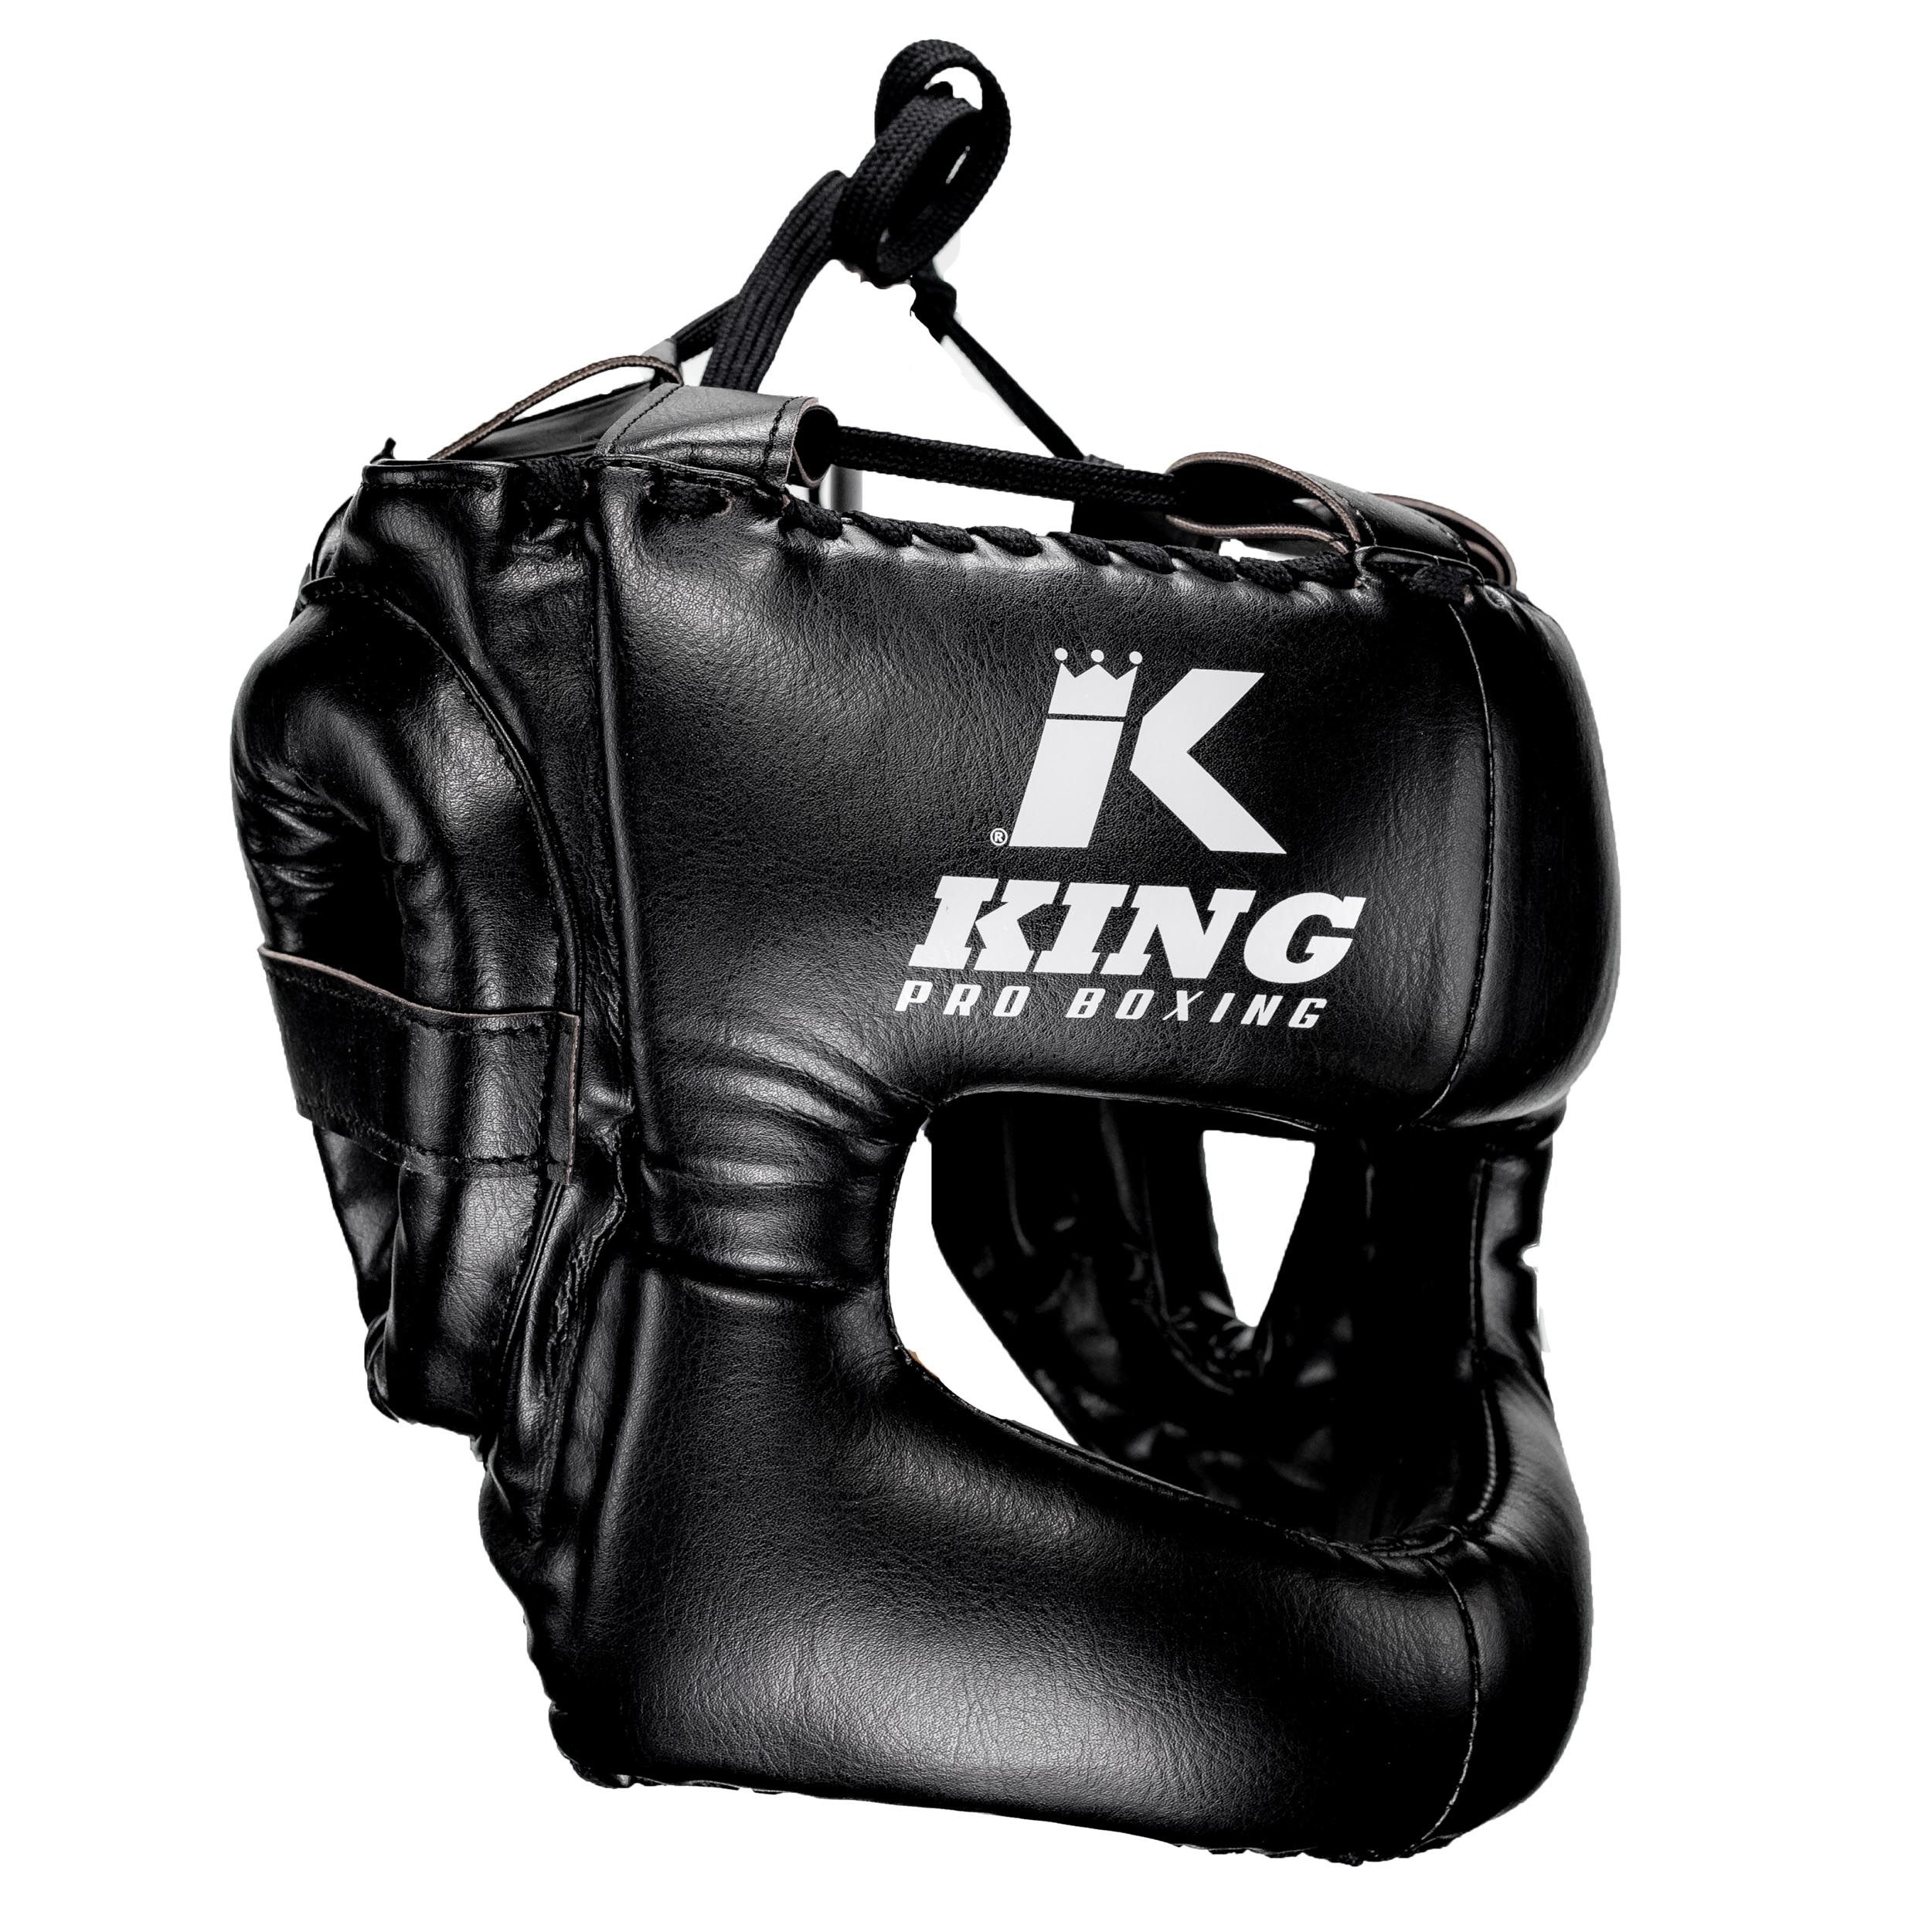 King Pro Boxing - Hoofdbescherming met neus bescherming - HG-PROBOX